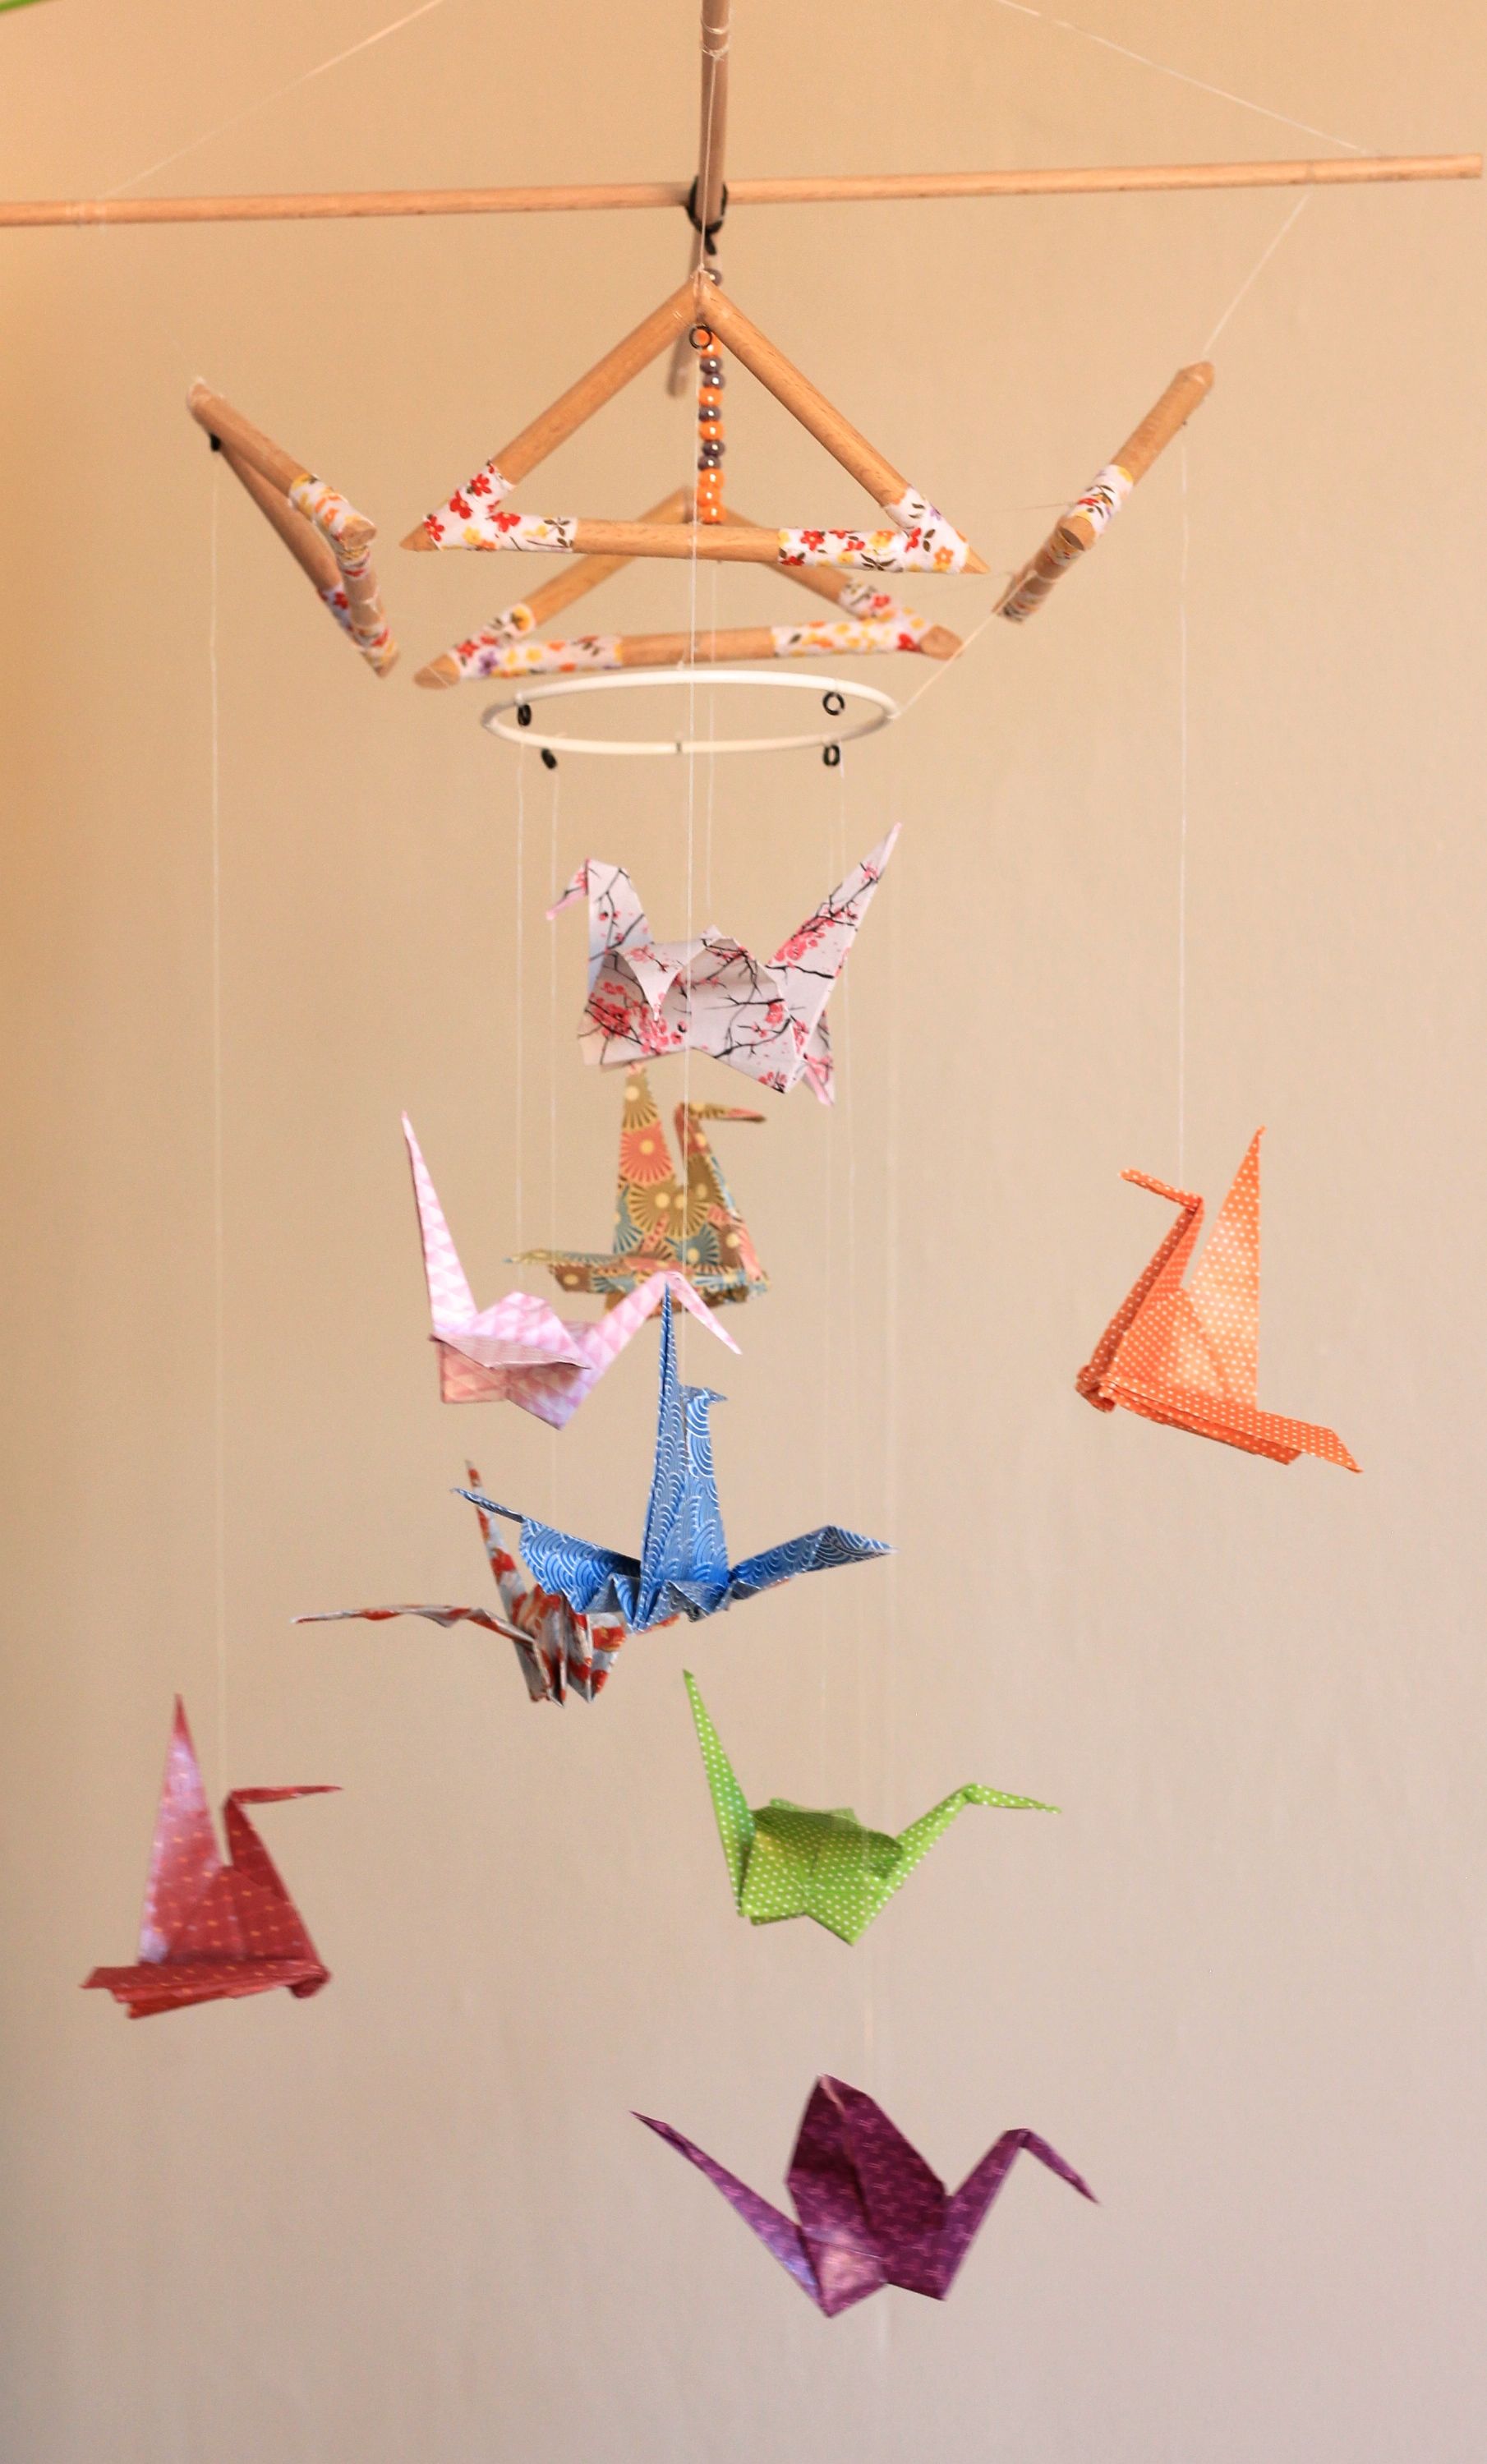 Guirlande bébé origami étoile rose violet parme pour décoration chambre  d'enfant : accessoires-bebe par parisdepapiers